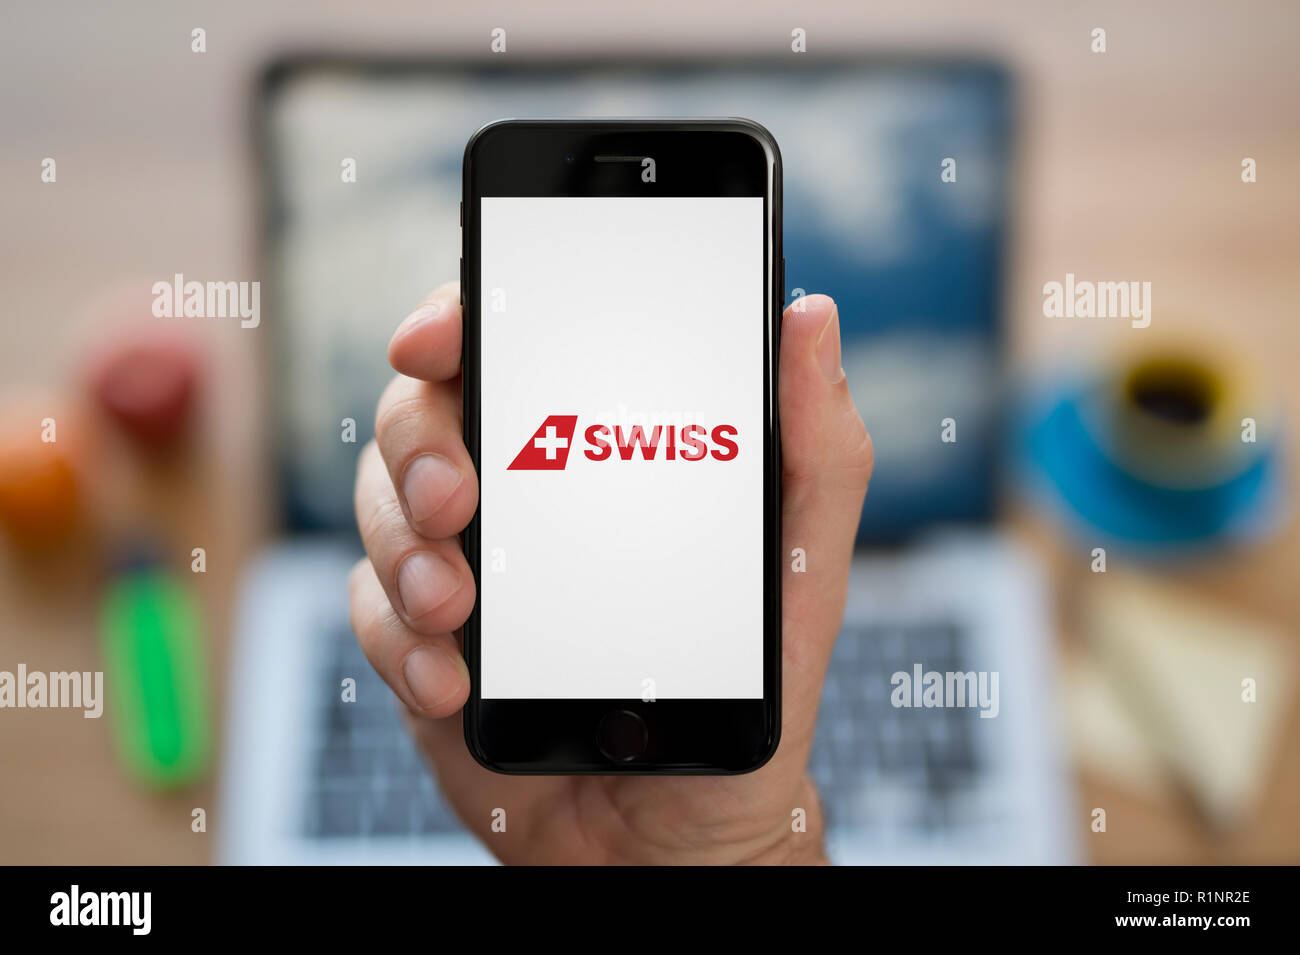 Un uomo guarda al suo iPhone che visualizza la Swiss International Air Lines logo, mentre se ne sta seduto alla sua scrivania per computer (solo uso editoriale). Foto Stock